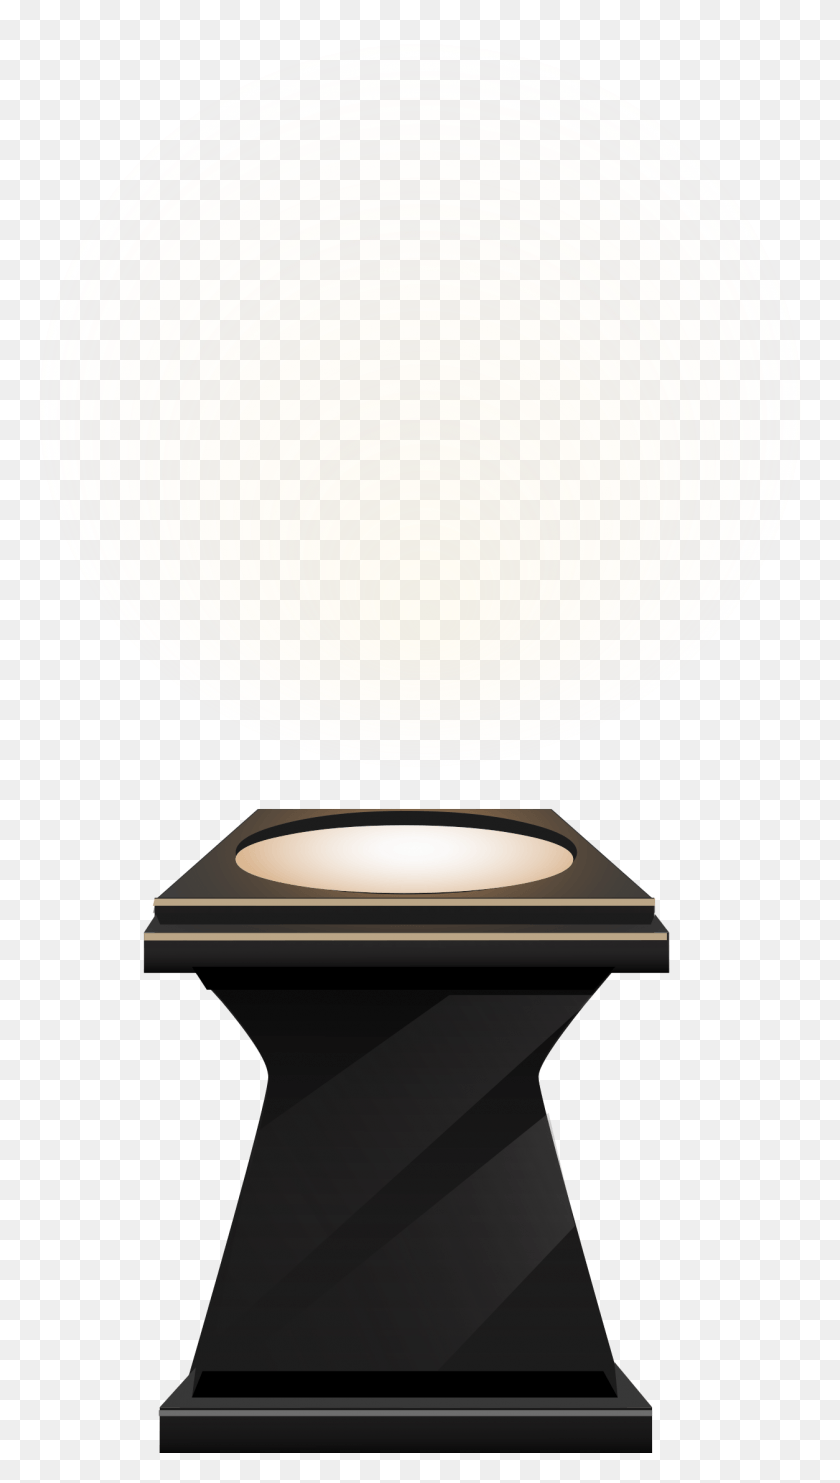 1254x2289 Este Diseño De Iconos Gratis De Pedestal De Foco De, Lámpara, Iluminación, Oro Hd Png